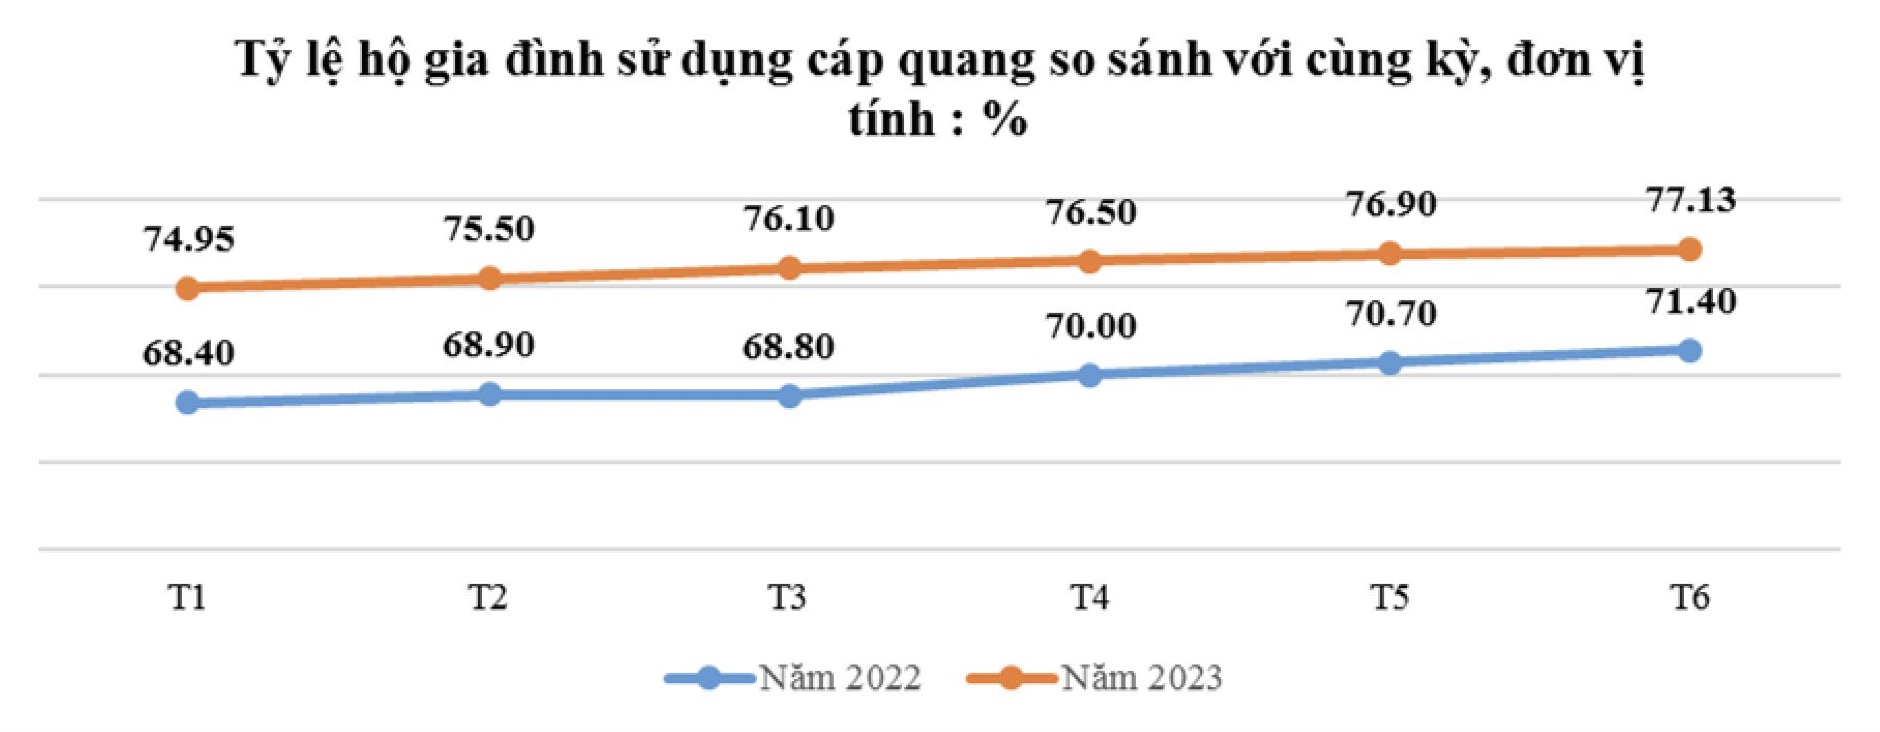 Lượng người dùng Internet tại Việt Nam tăng nhanh ngoài dự báo - 1